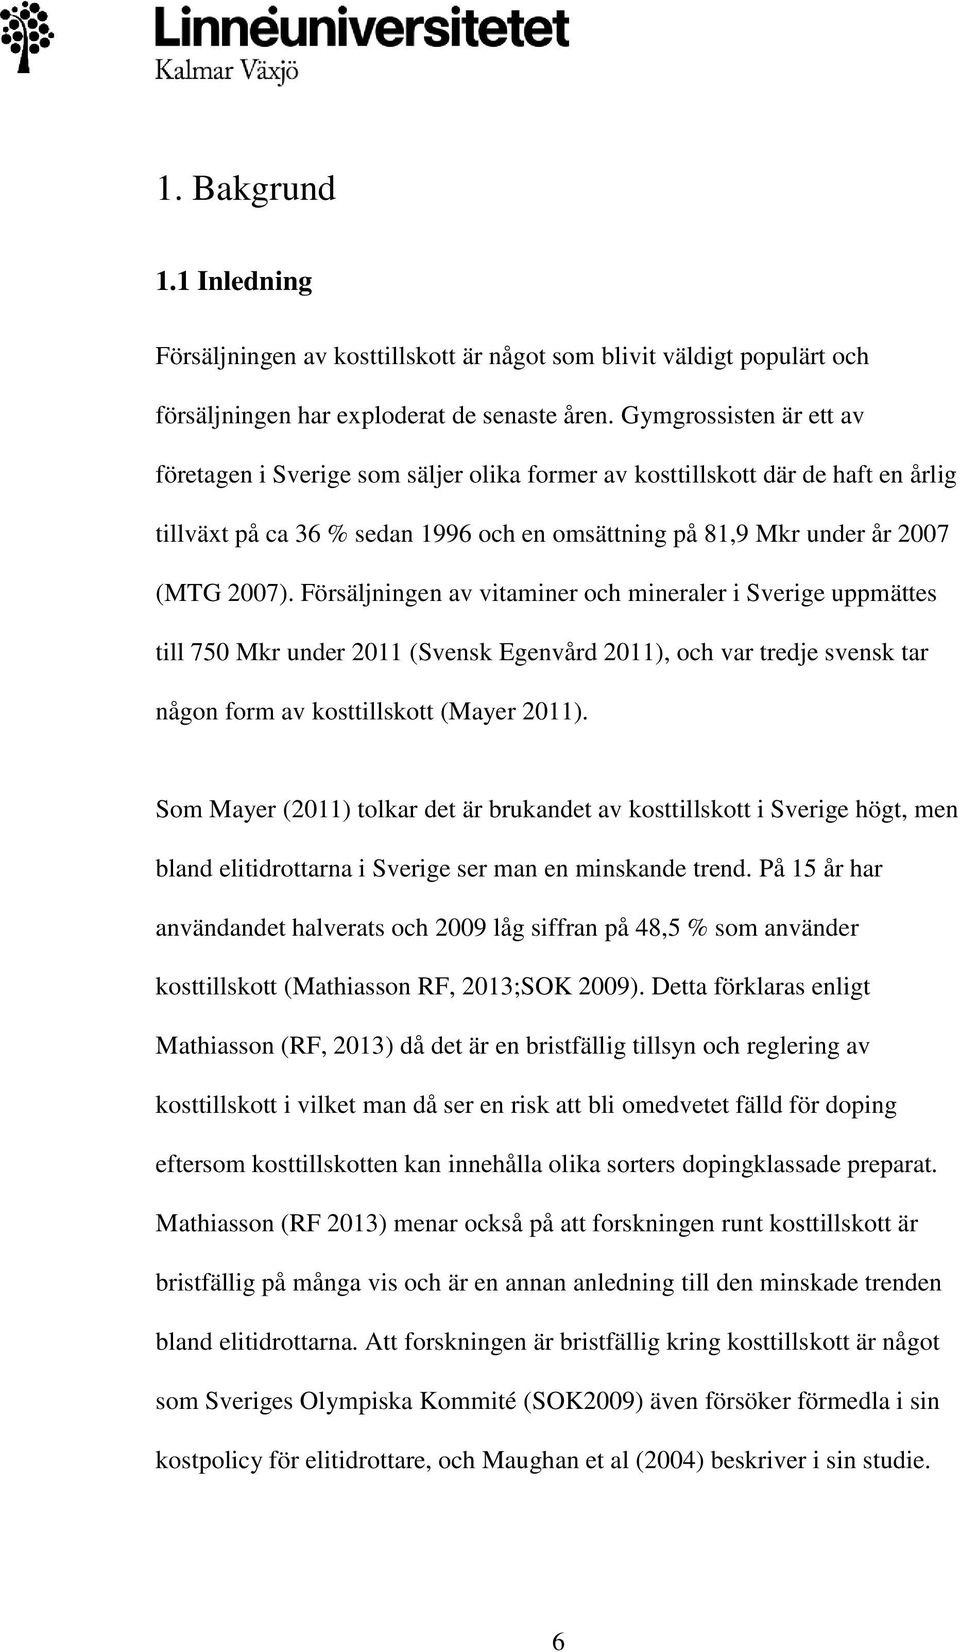 Försäljningen av vitaminer och mineraler i Sverige uppmättes till 750 Mkr under 2011 (Svensk Egenvård 2011), och var tredje svensk tar någon form av kosttillskott (Mayer 2011).